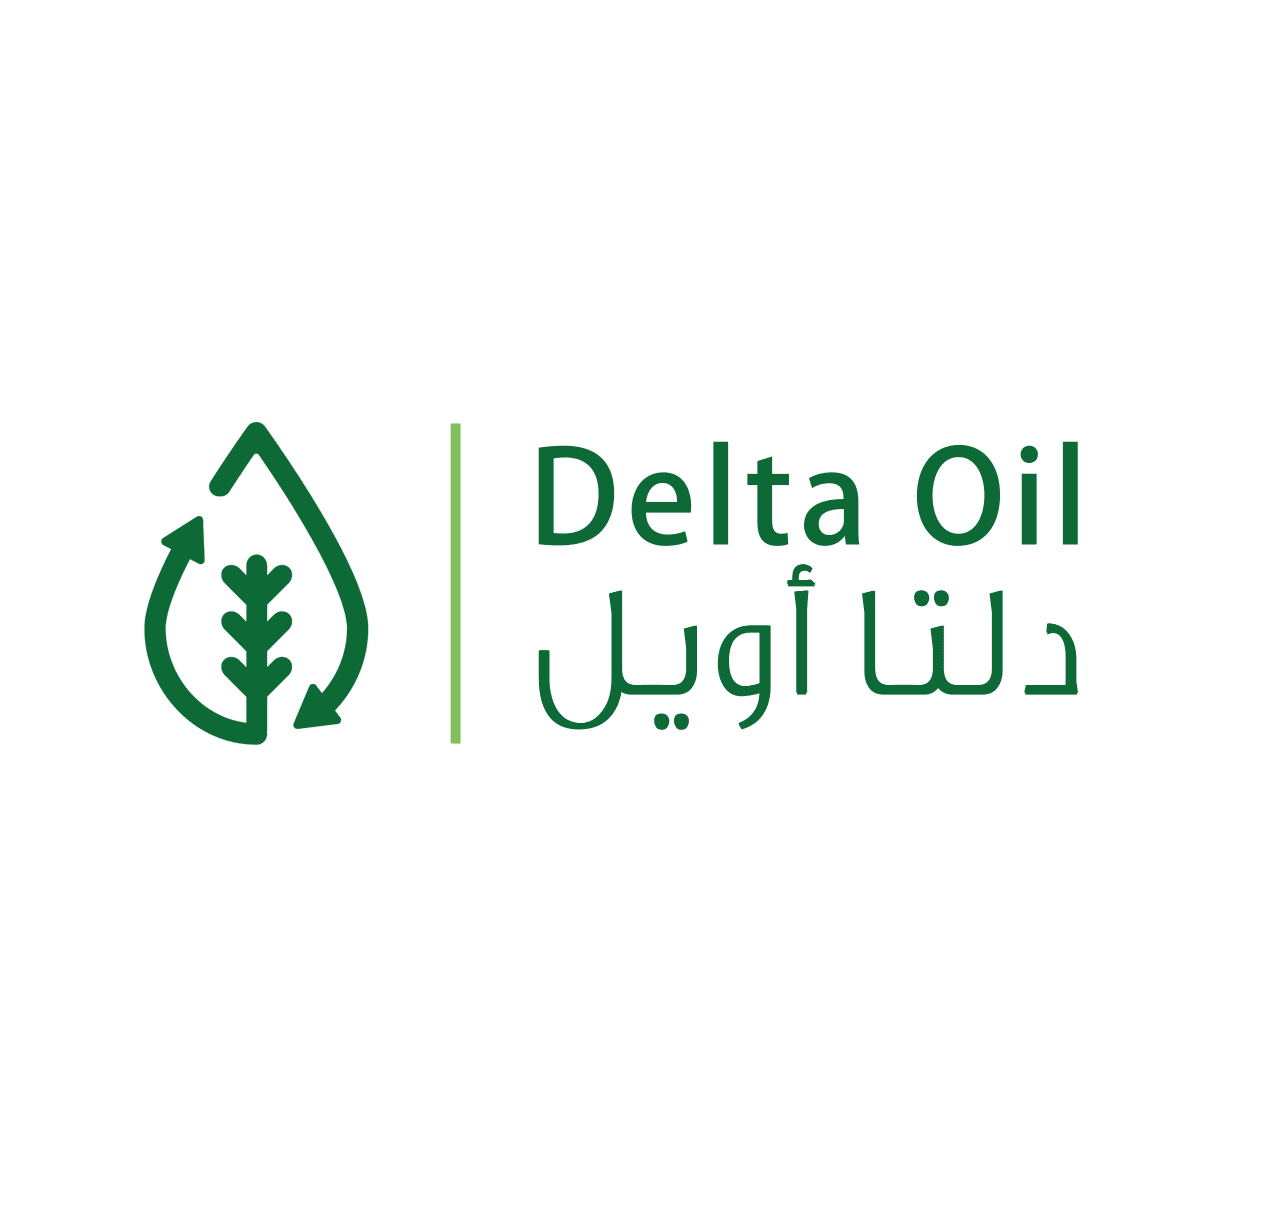 Delta oil